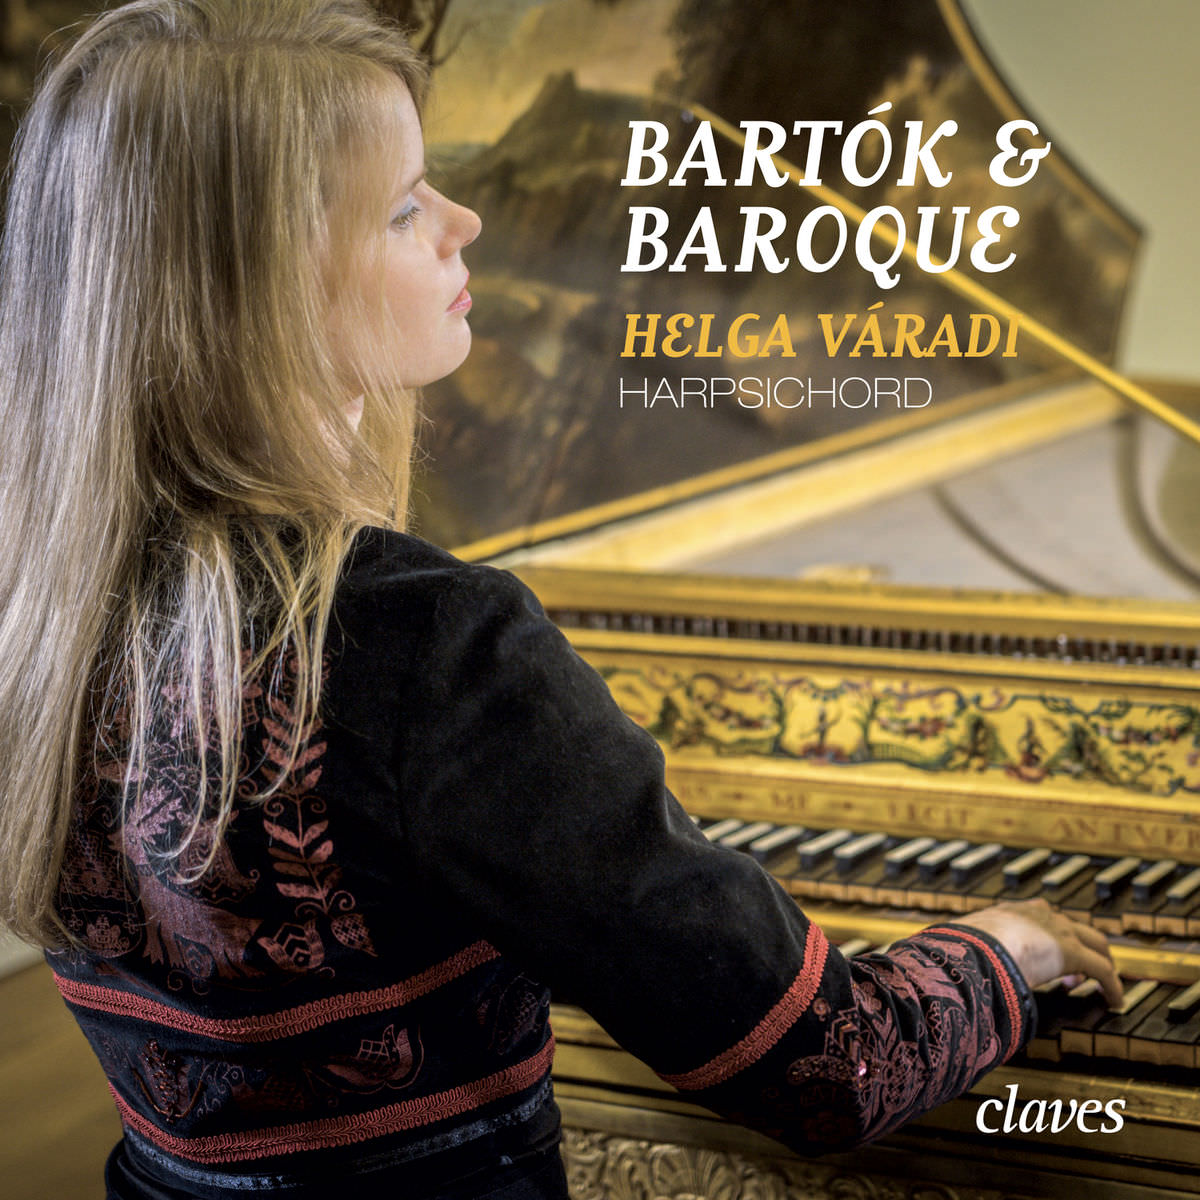 Helga Varadi - Bartok & Baroque (2018) [FLAC 24bit/96kHz]